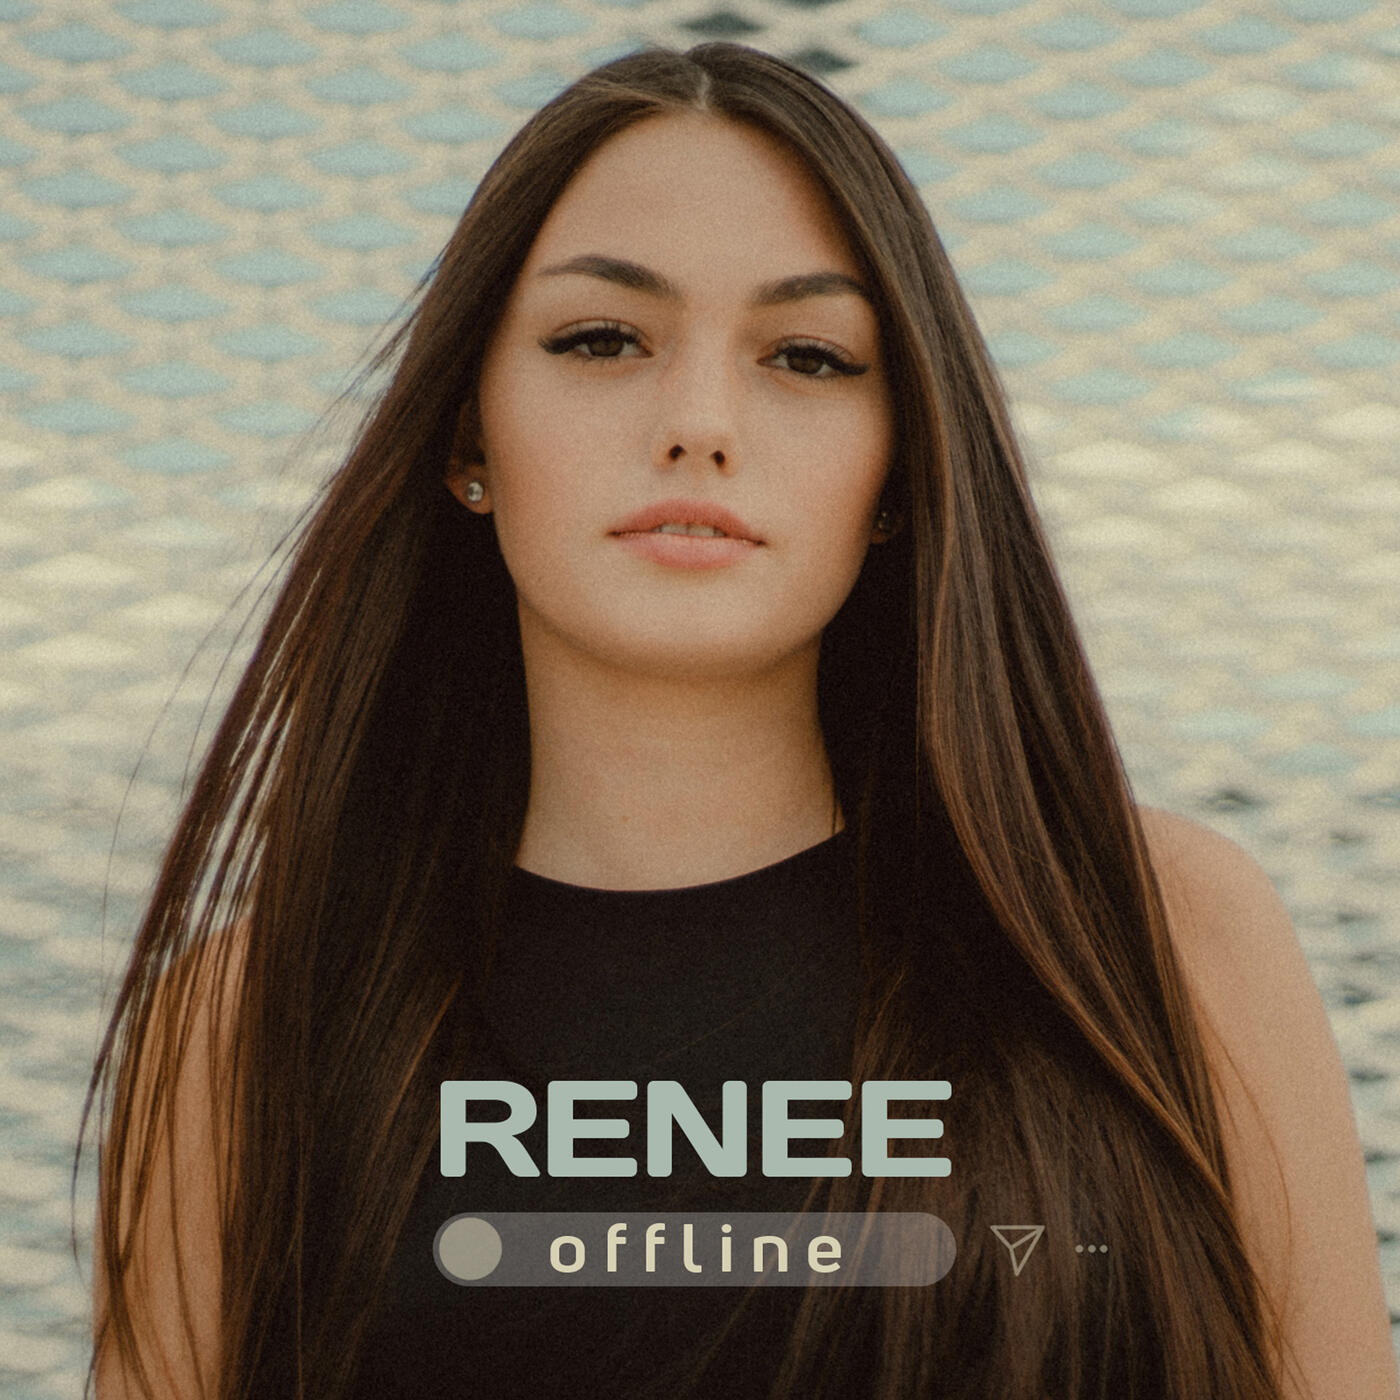 Renee Offline Iheartradio 